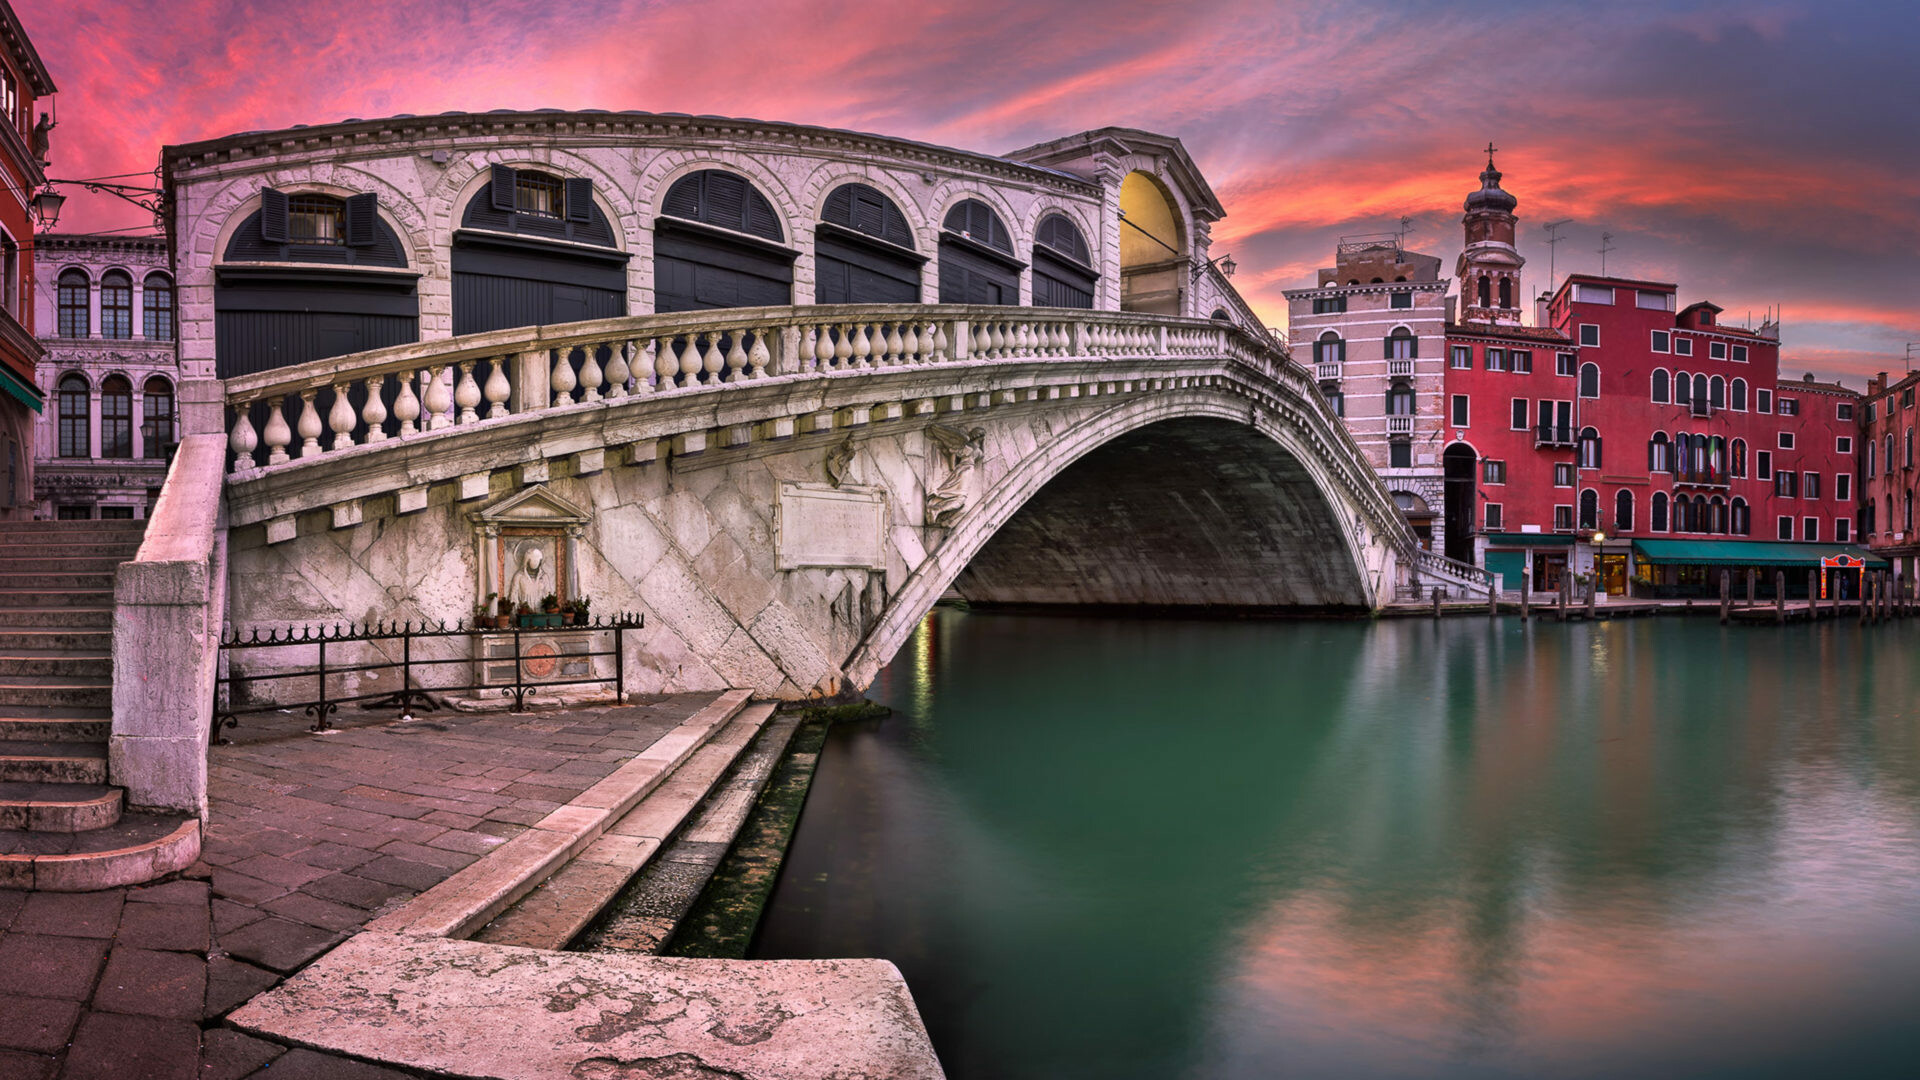 Italy: Venice, Rialto Bridge And San Bartolomeo Church. 1920x1080 Full HD Background.